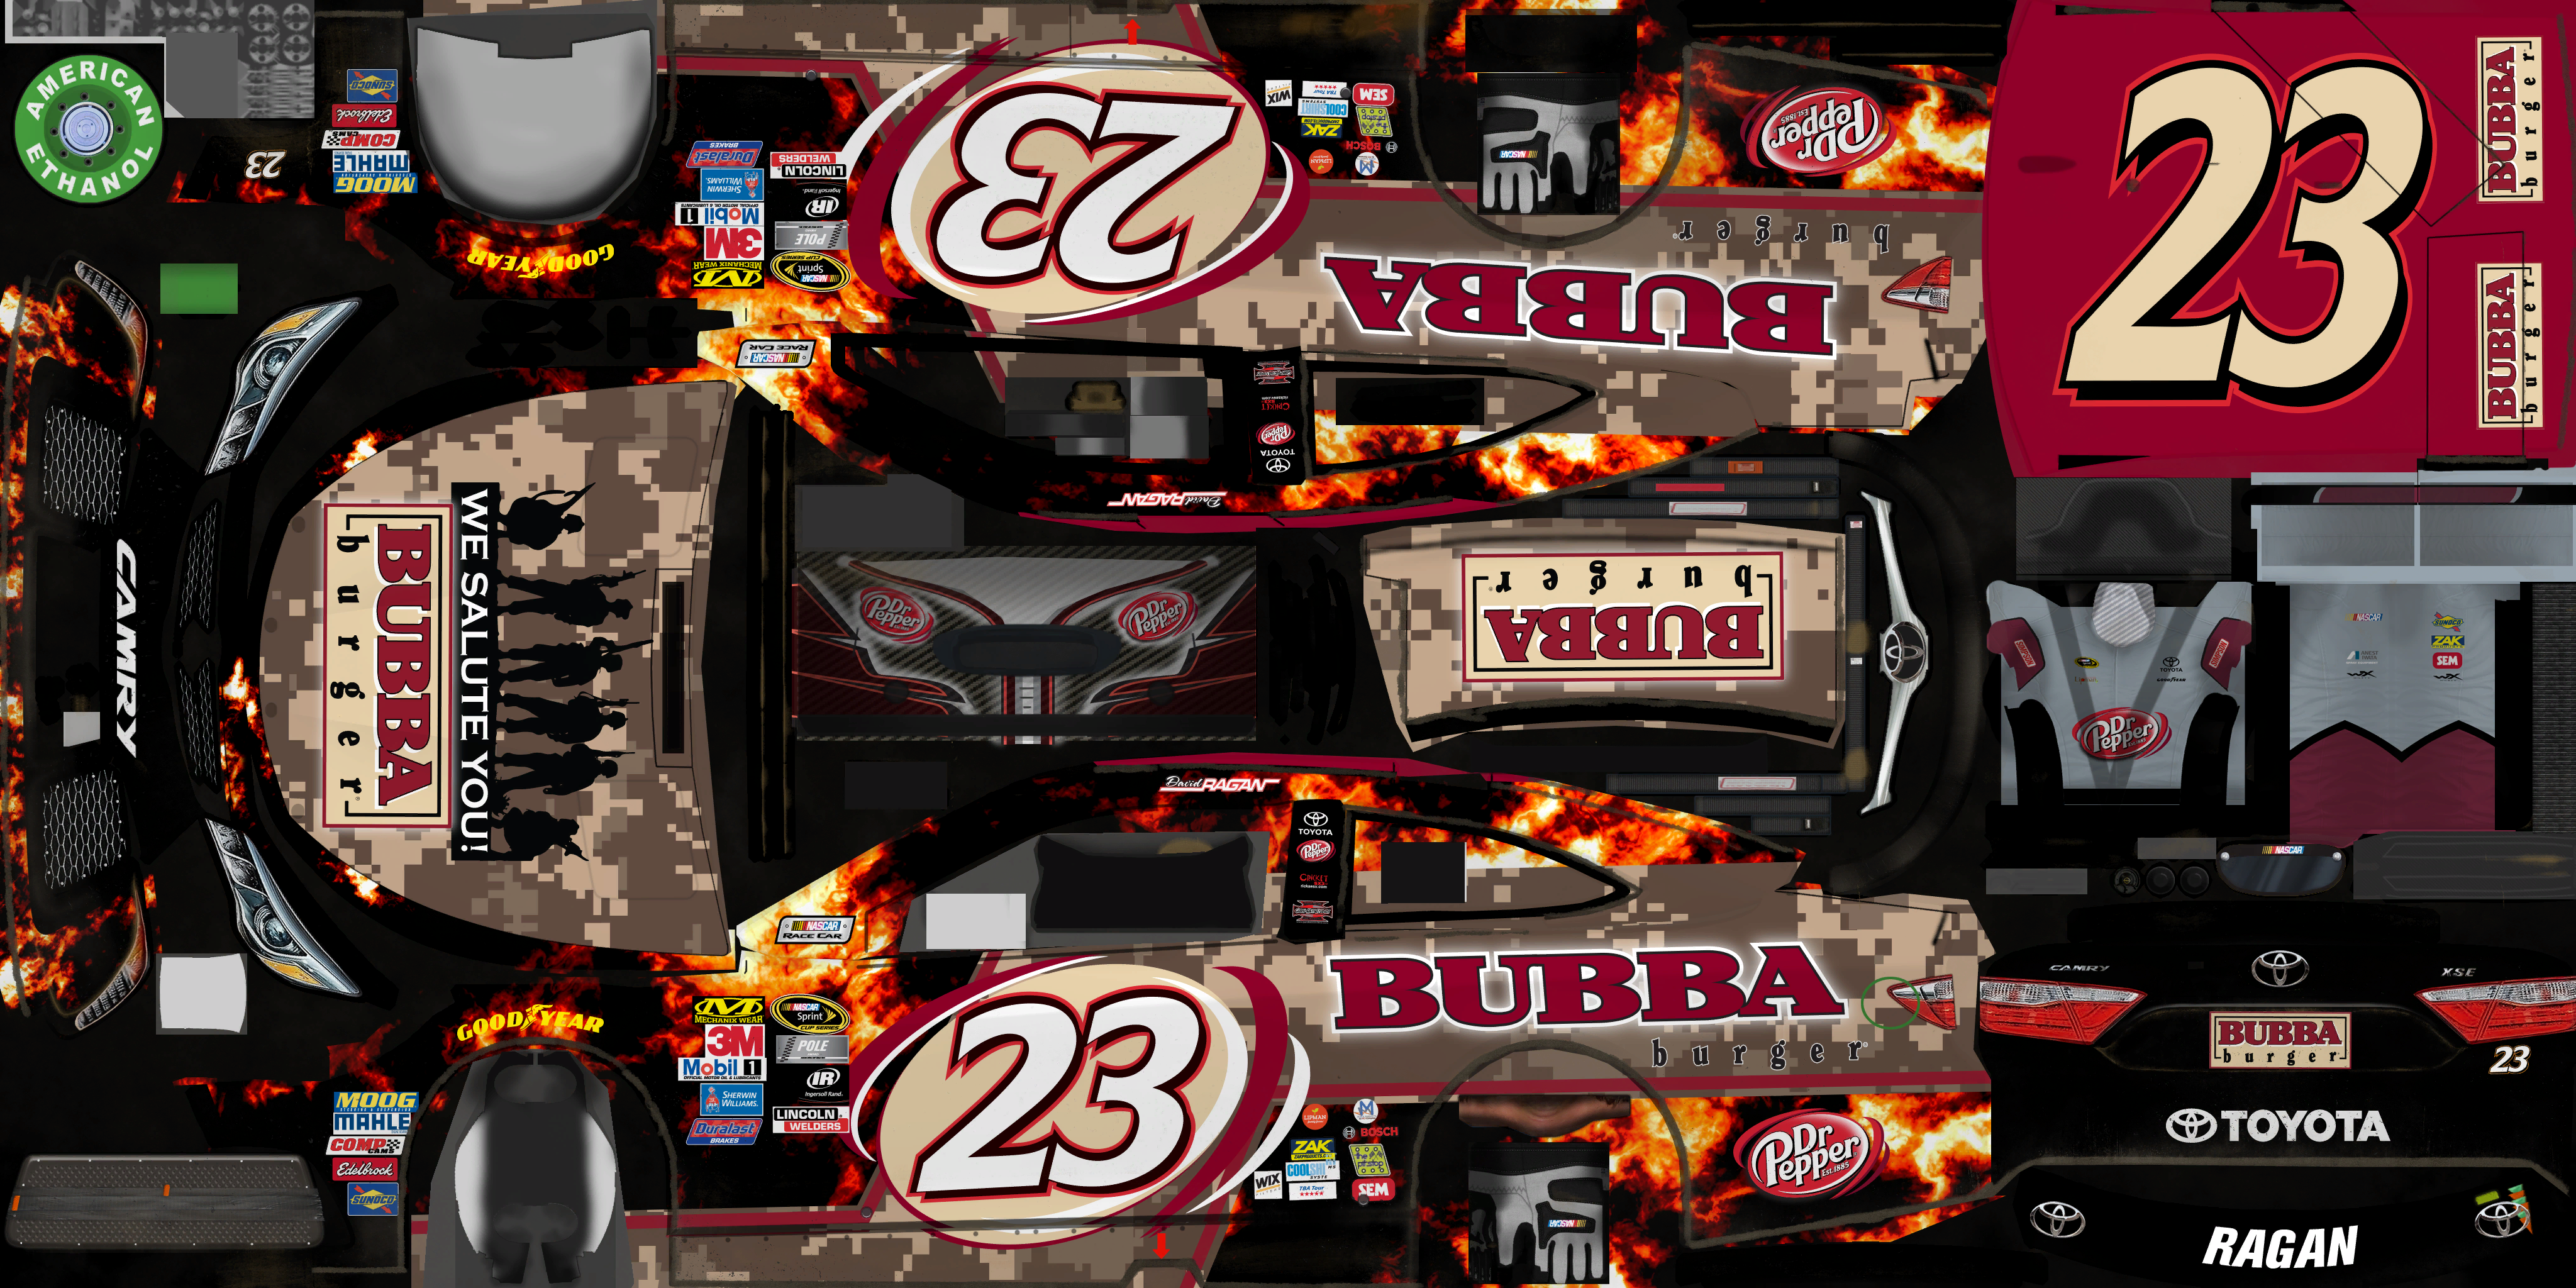 NASCAR Heat Evolution - #23 David Ragan (BUBBA Burger)